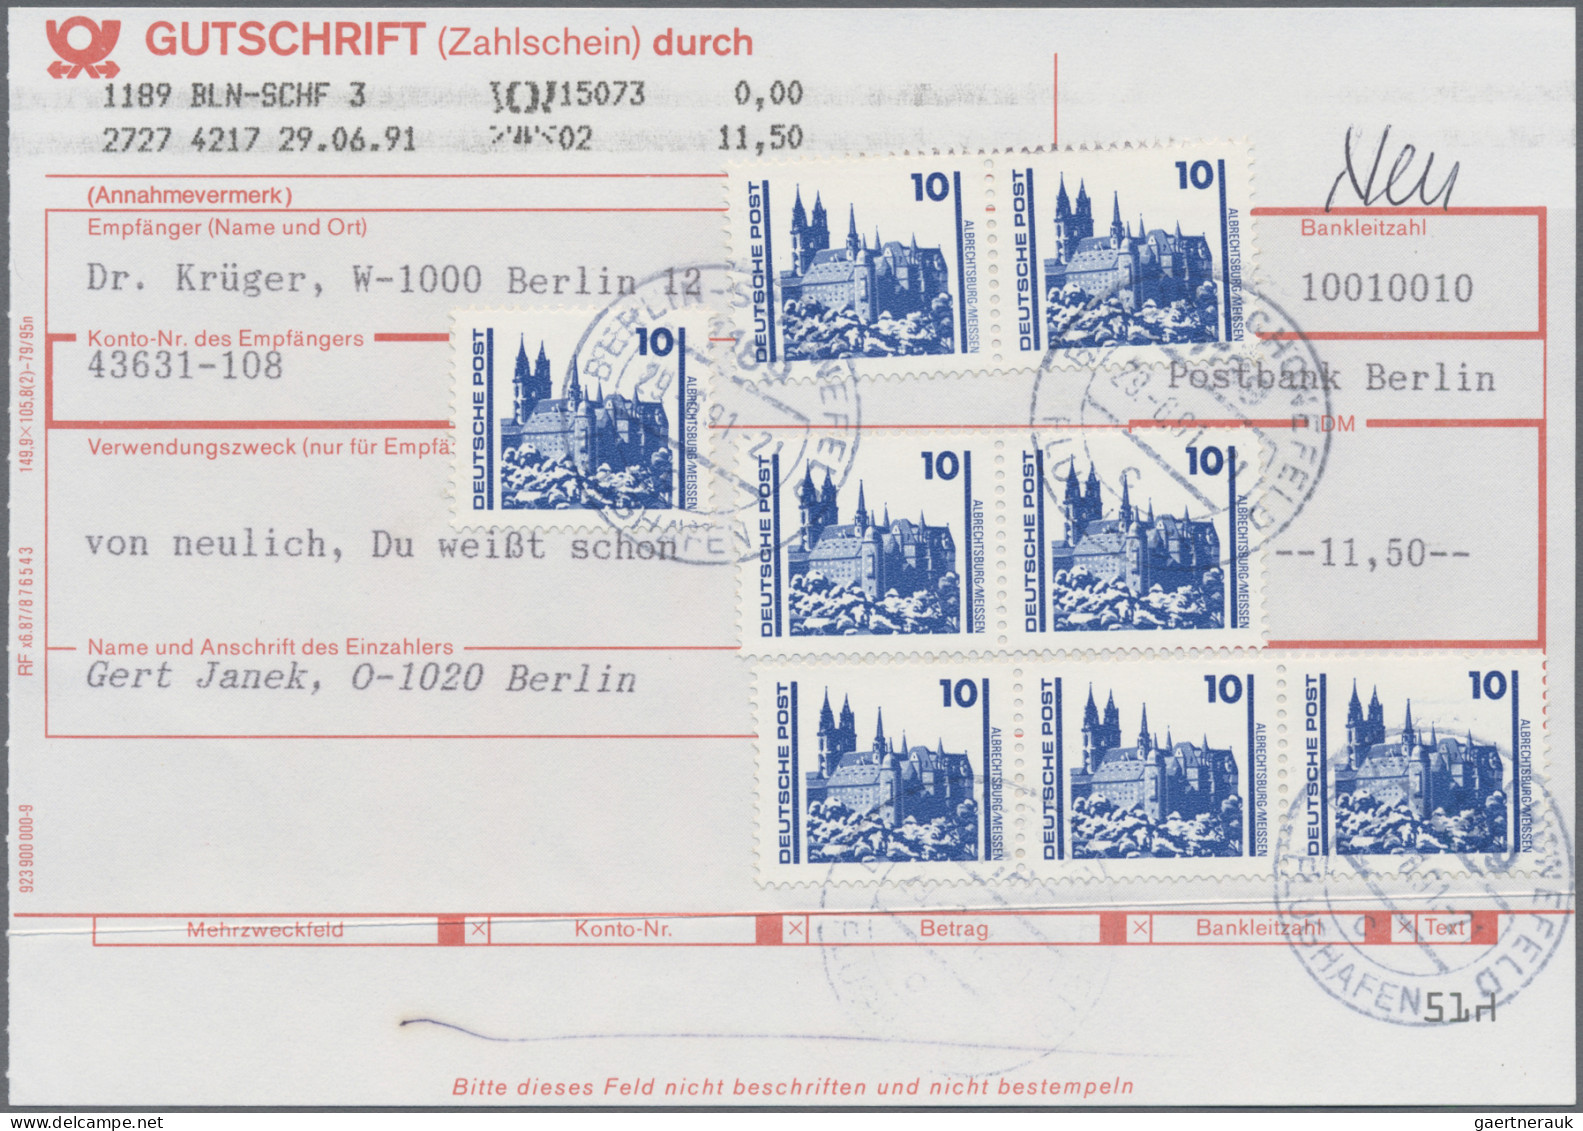 DDR: 1949/1990, Partie von ca. 121 Belegen, neben einfachem Material sind auch e